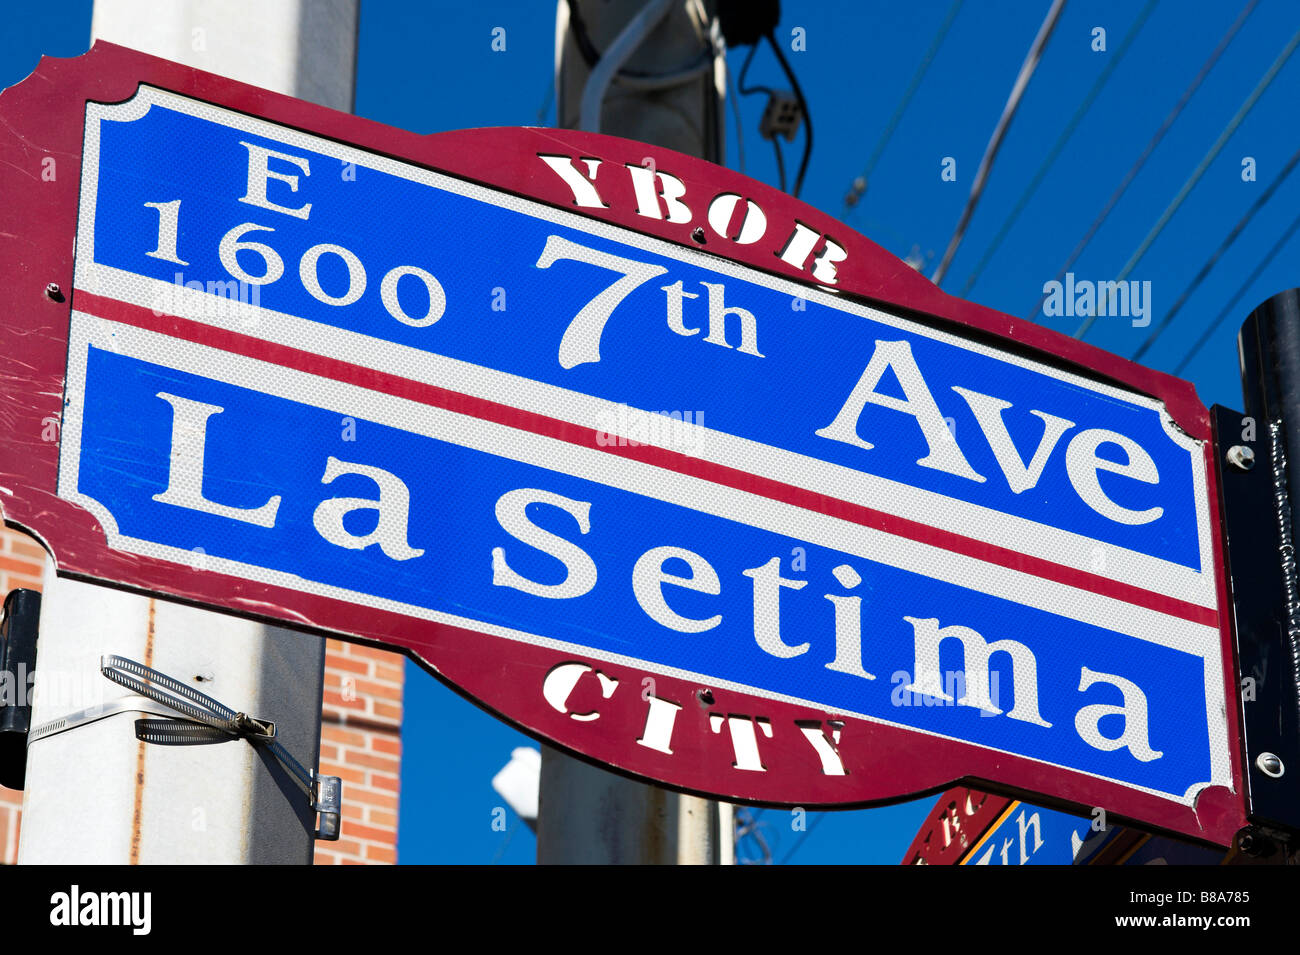 Un cartello stradale per la Settima Avenue nel quartiere storico di Ybor City, Tampa, Florida, Stati Uniti d'America Foto Stock